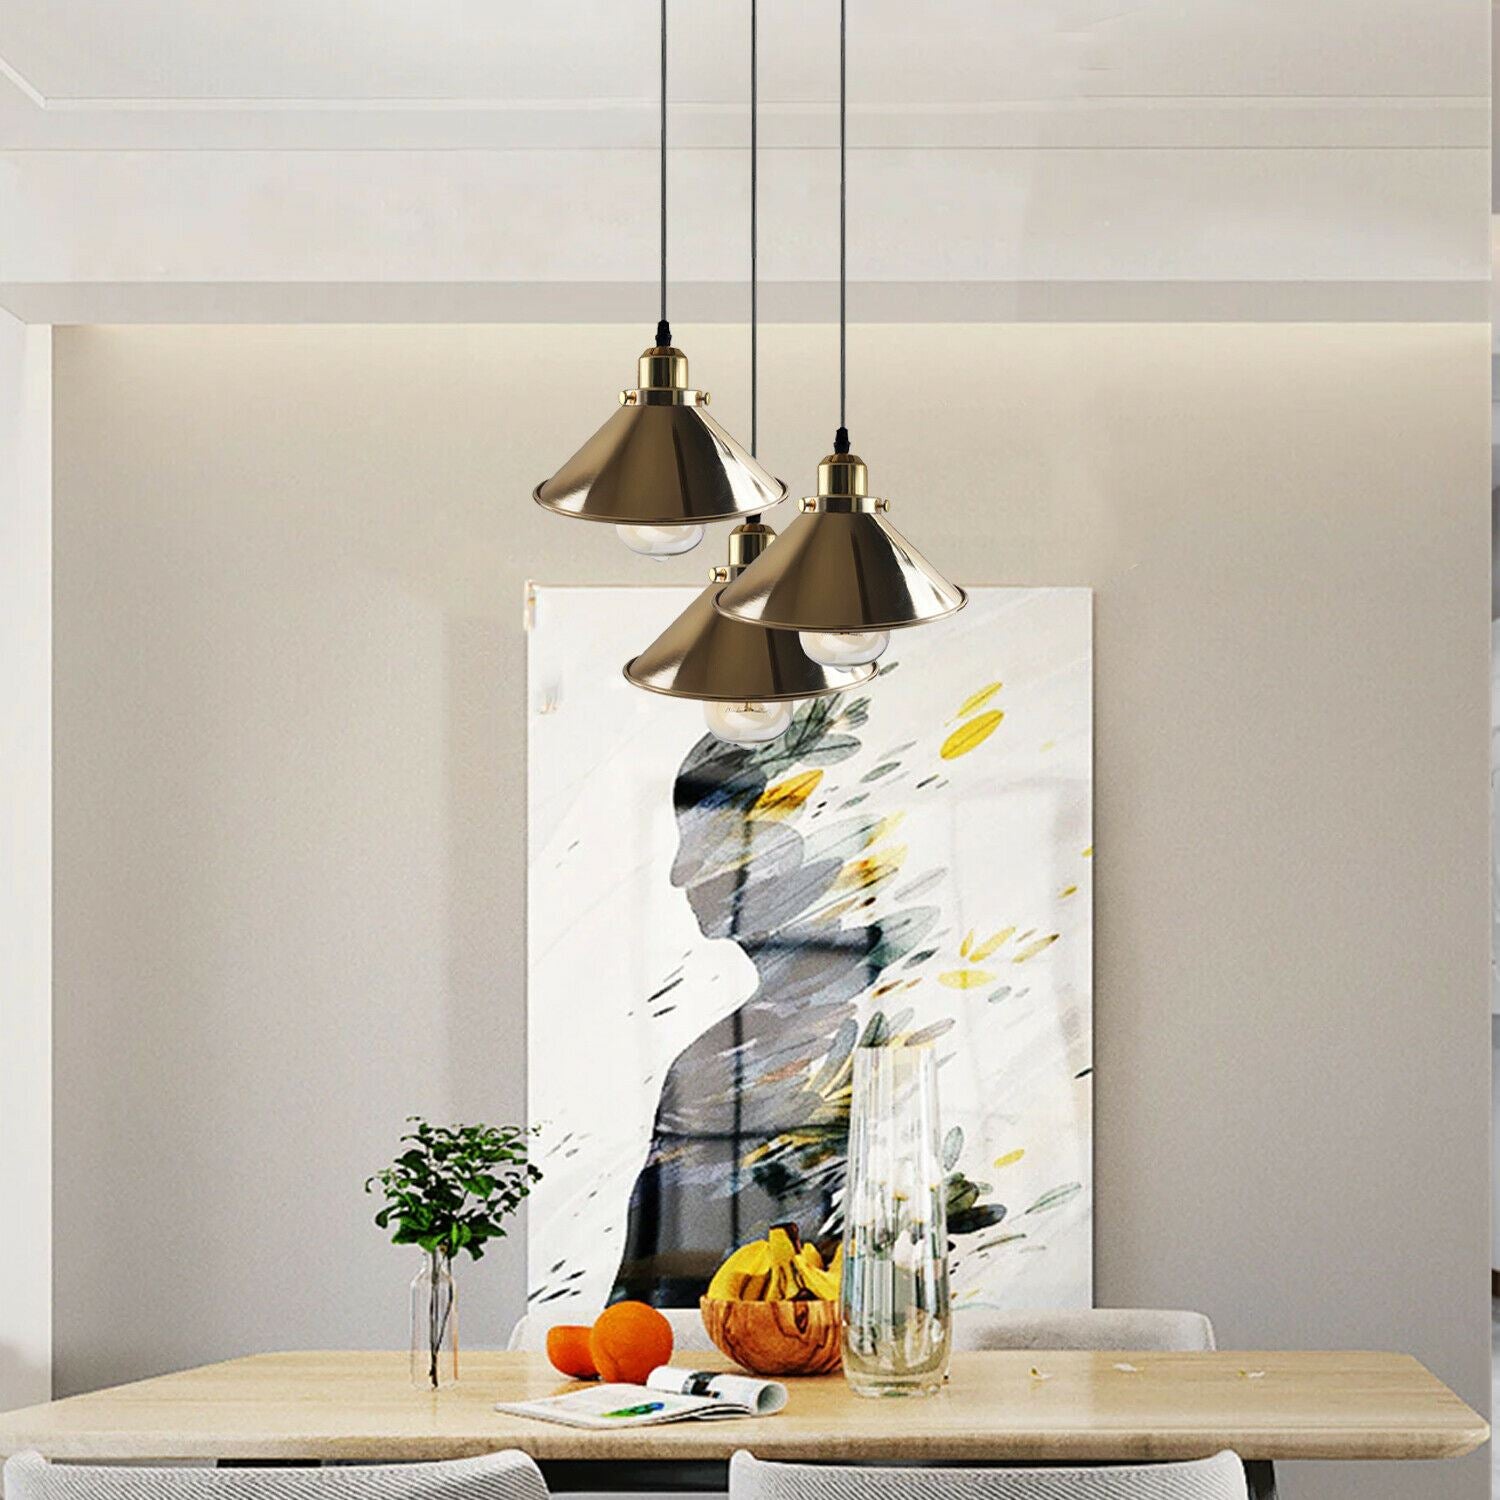 Modern Industrial French Gold Hanging Ceiling Pendant Light Metal Cone Shape Indoor Lighting For Bed Room, Kitchen, Living Room~1171 - LEDSone UK Ltd